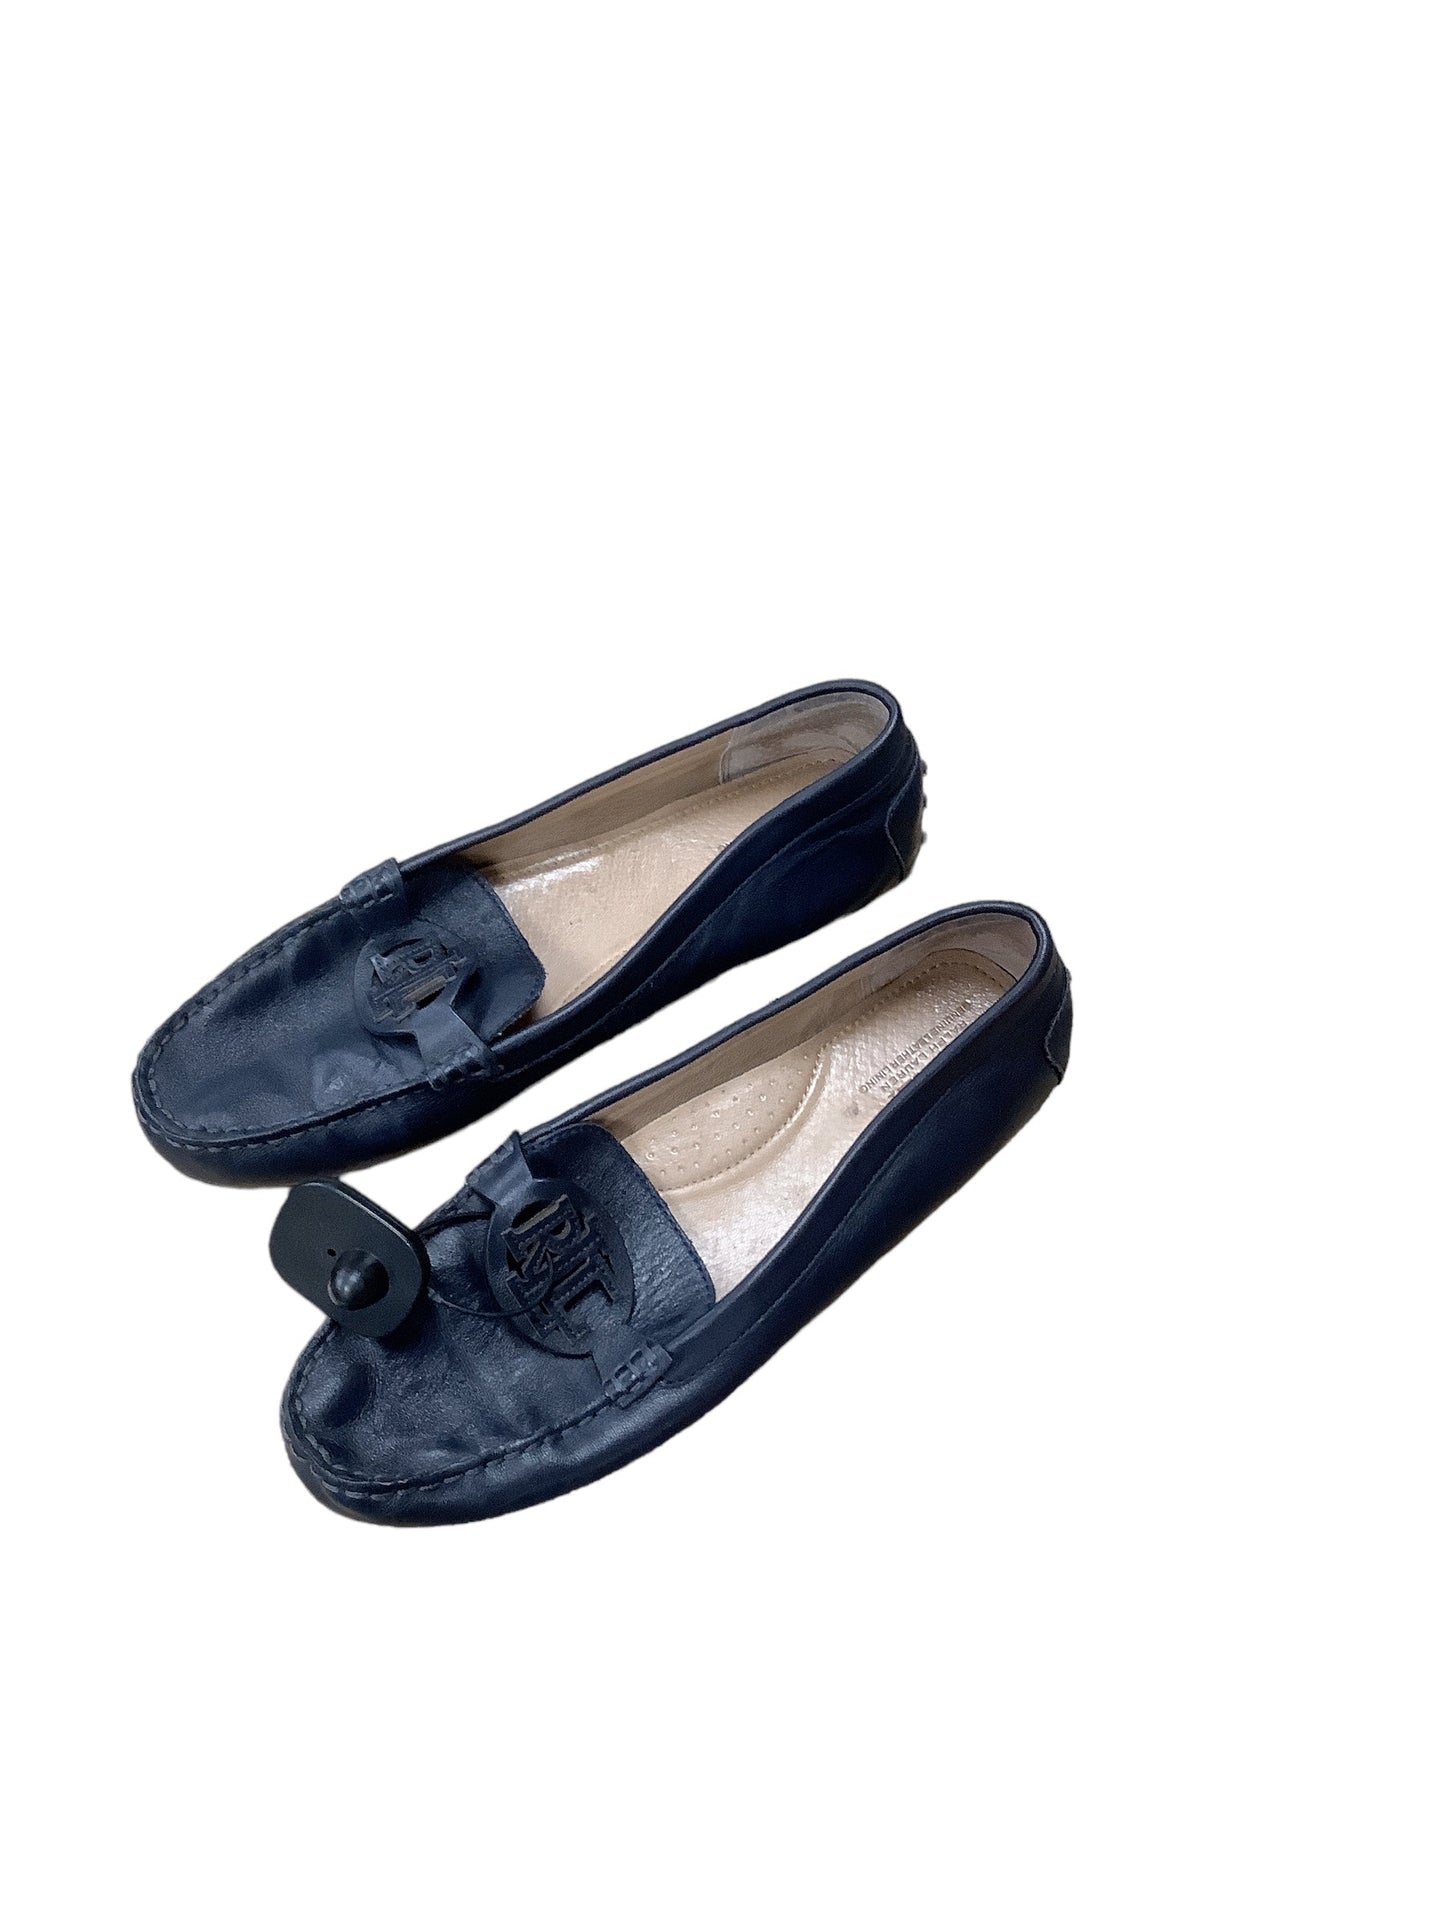 Navy Shoes Flats Lauren By Ralph Lauren, Size 10